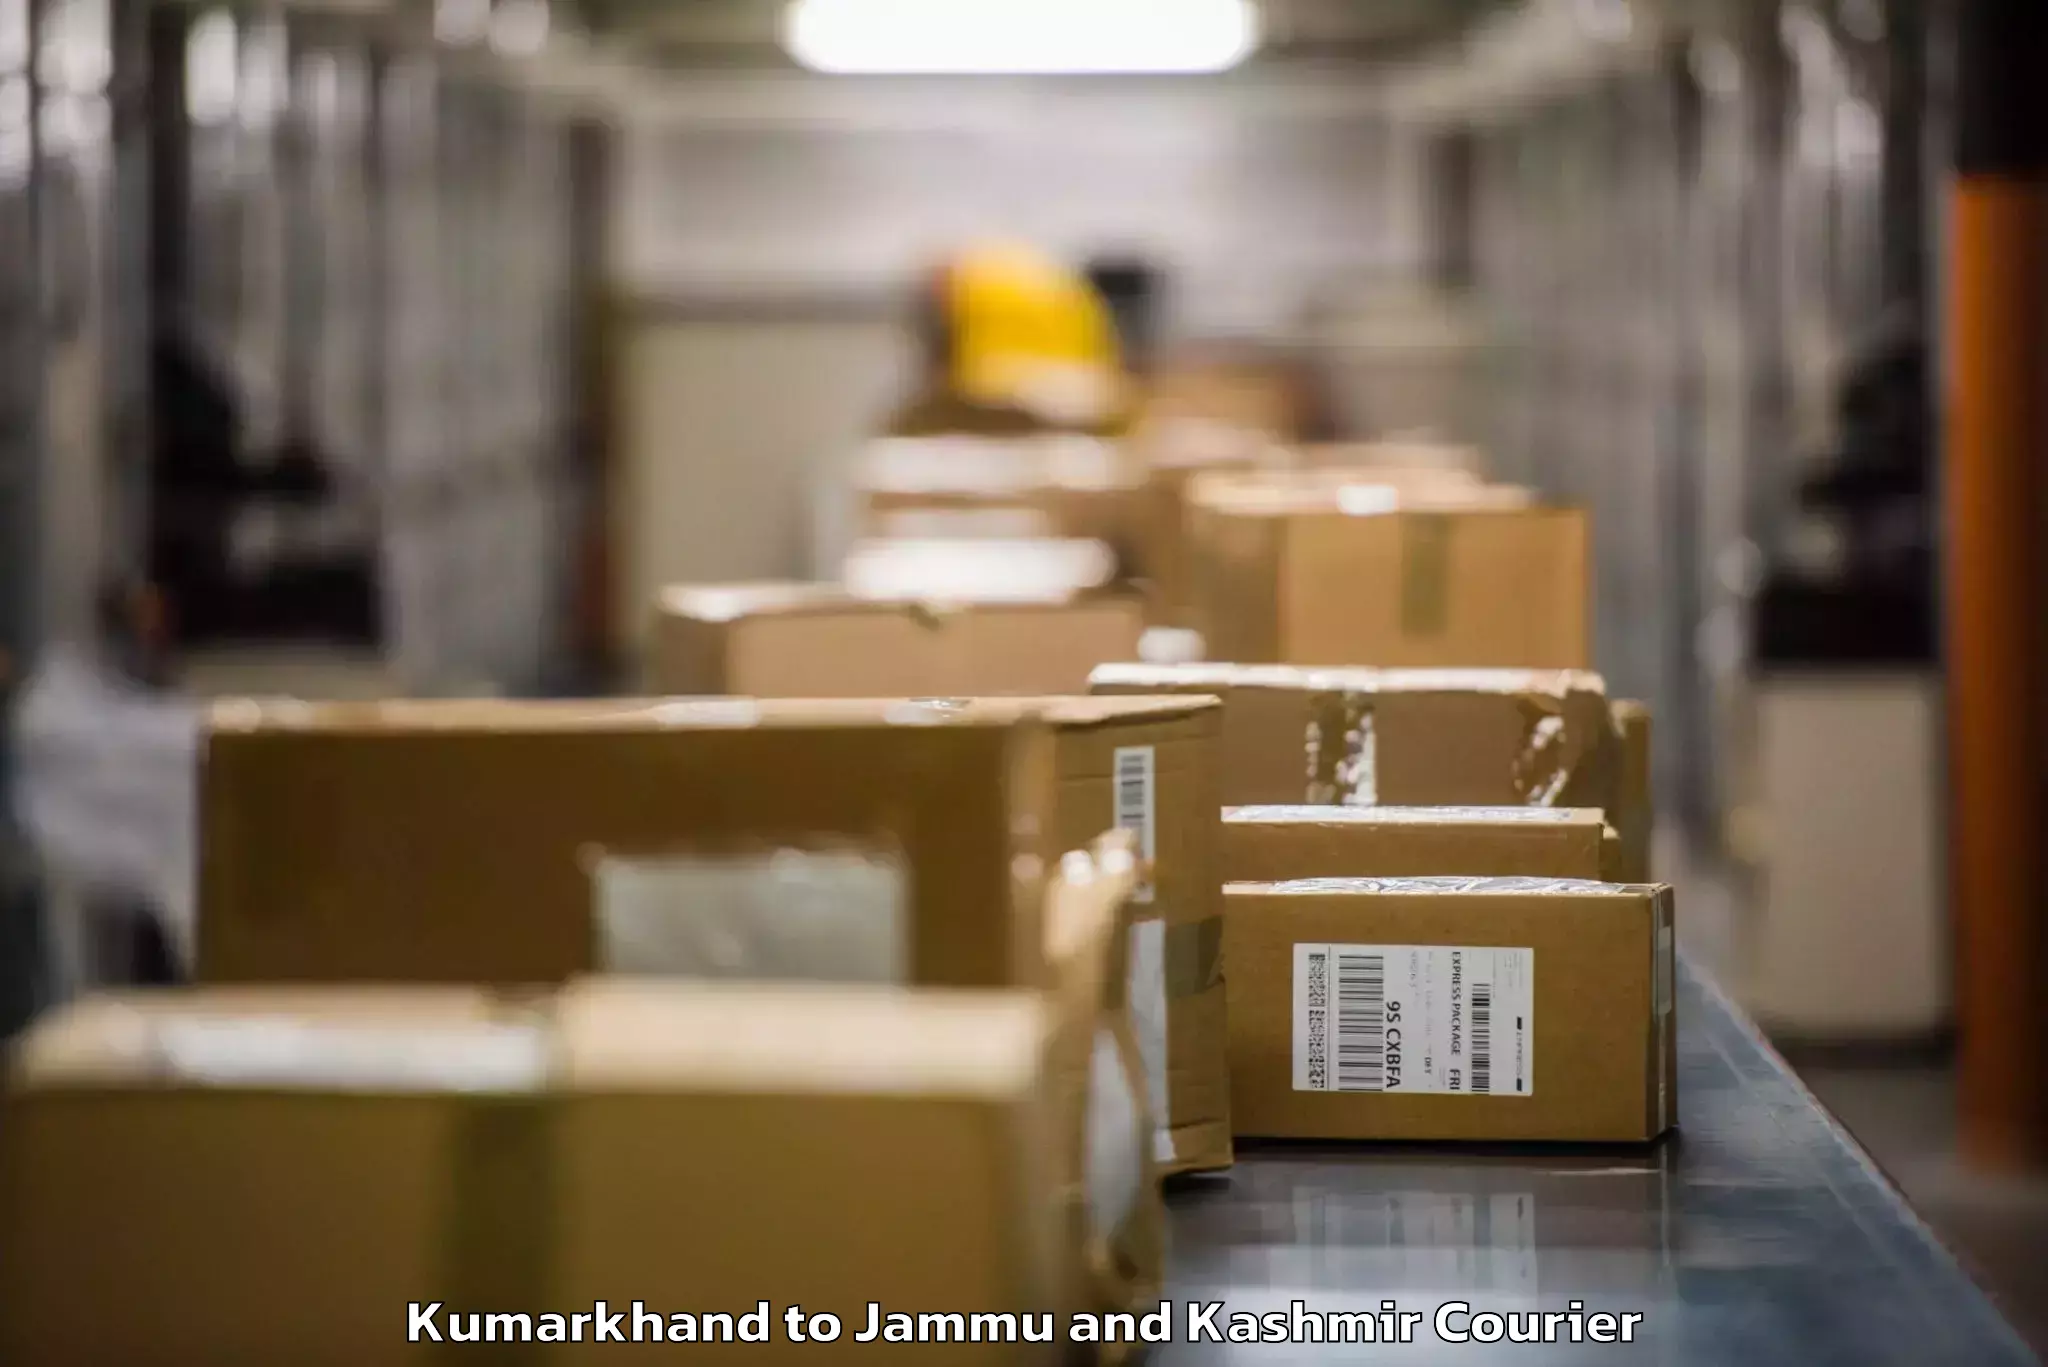 Baggage courier service Kumarkhand to Srinagar Kashmir